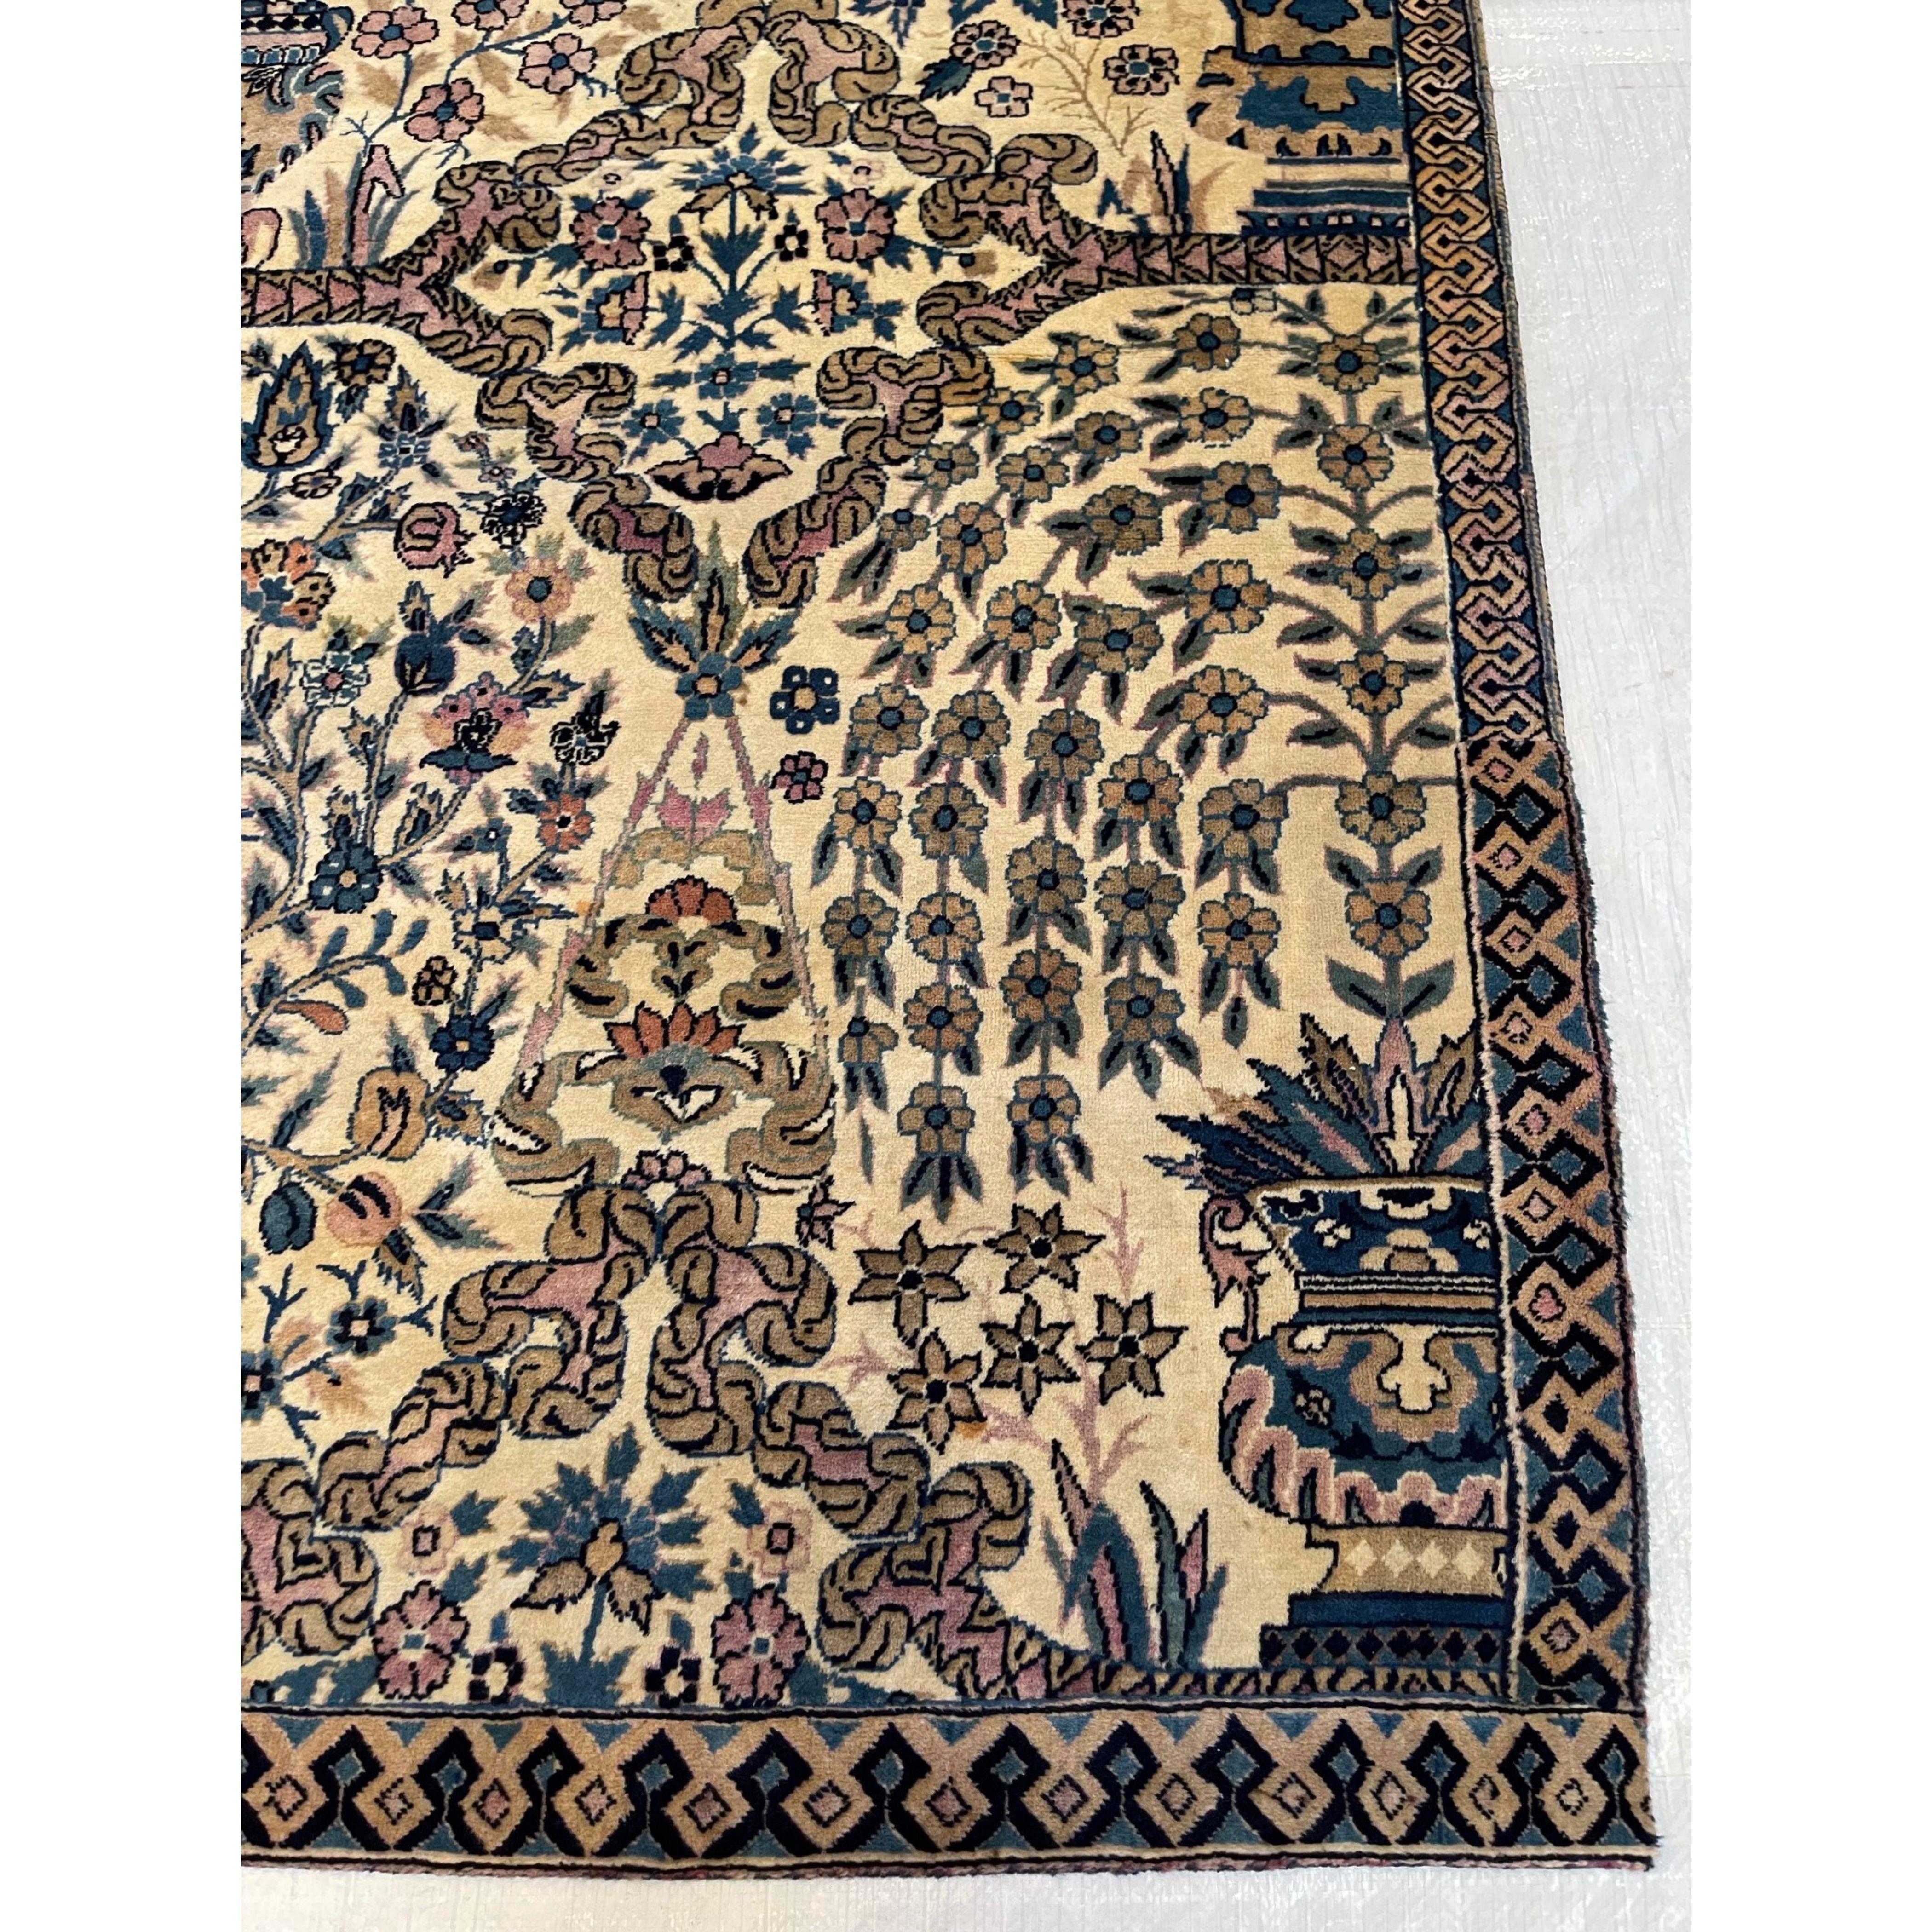 Tapis anciens d'Agra Agra est un centre important de production de tapis depuis la grande période de l'art moghol aux XVIe et XVIIe siècles. Lorsque l'industrie du tapis a été relancée sous la domination britannique au XIXe siècle, la grande